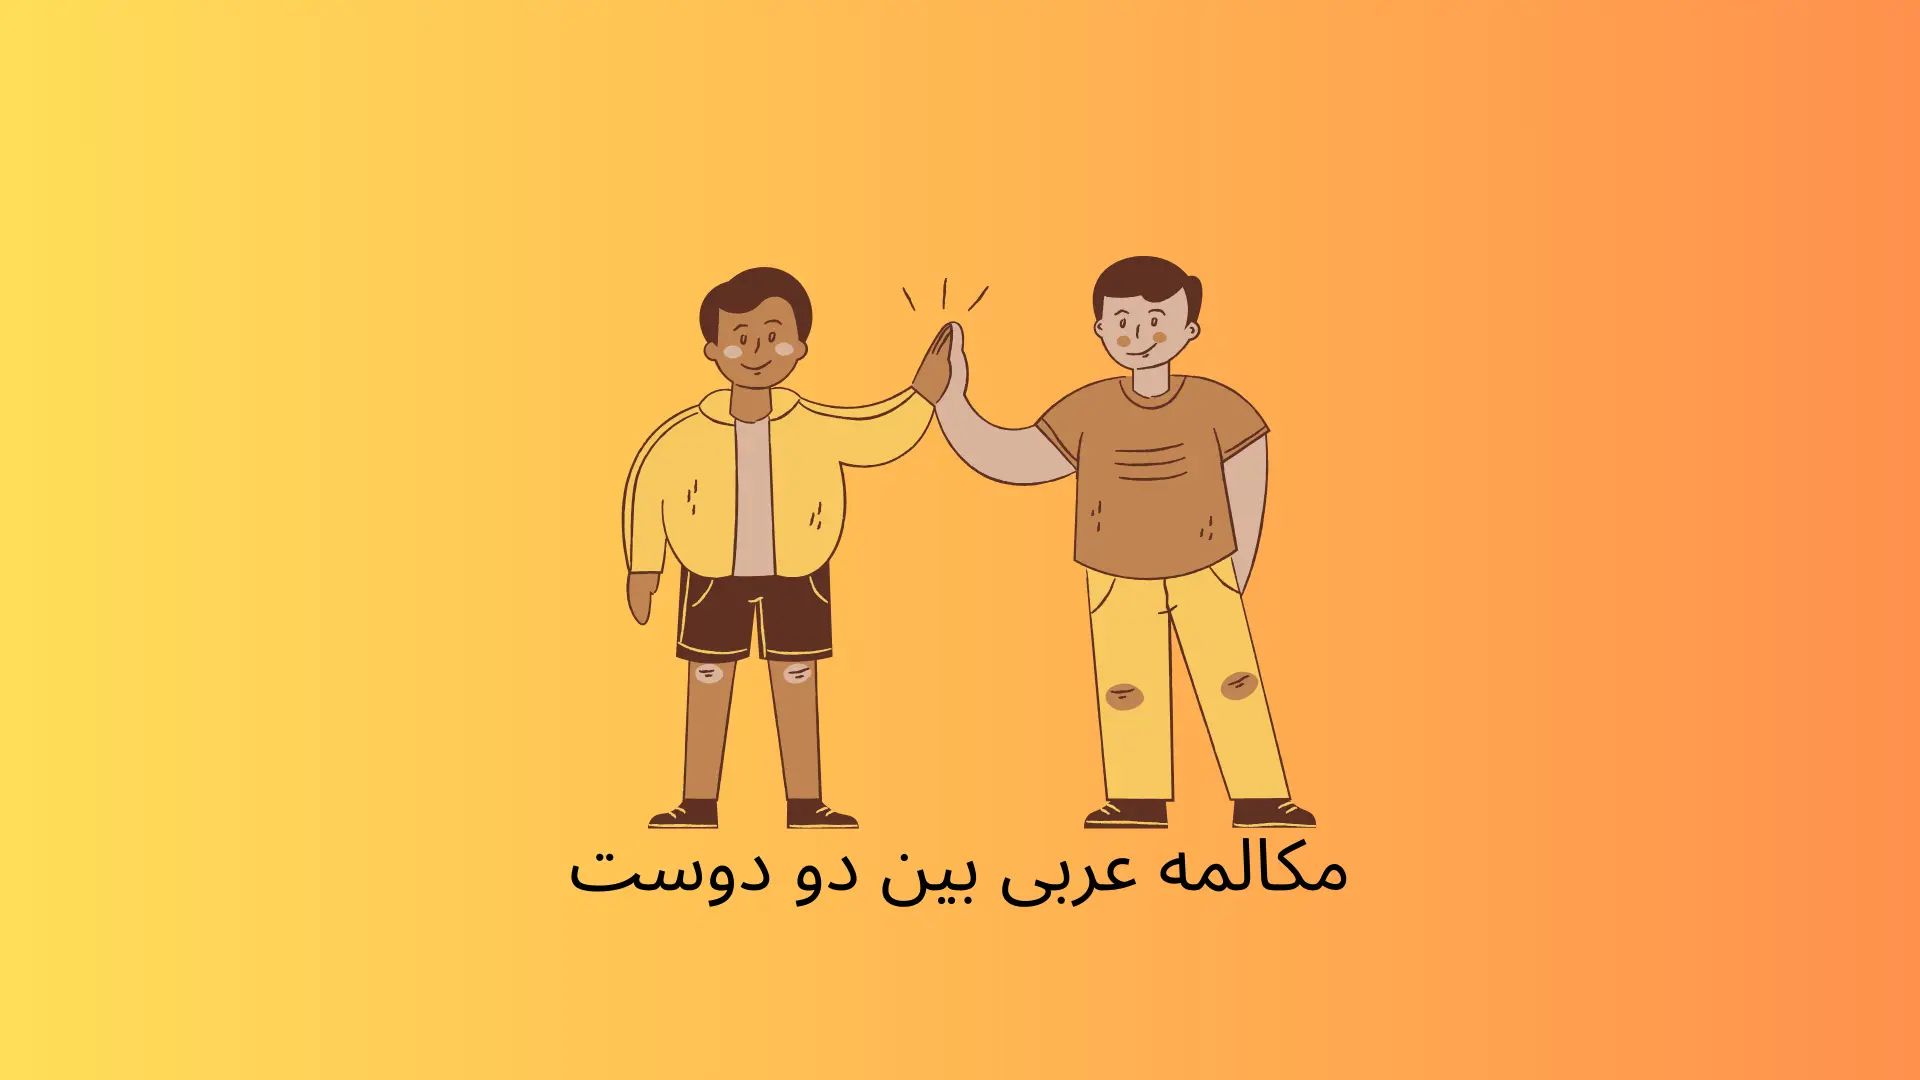 مکالمه عربی بین دو دوست درباره آخر هفته (01)